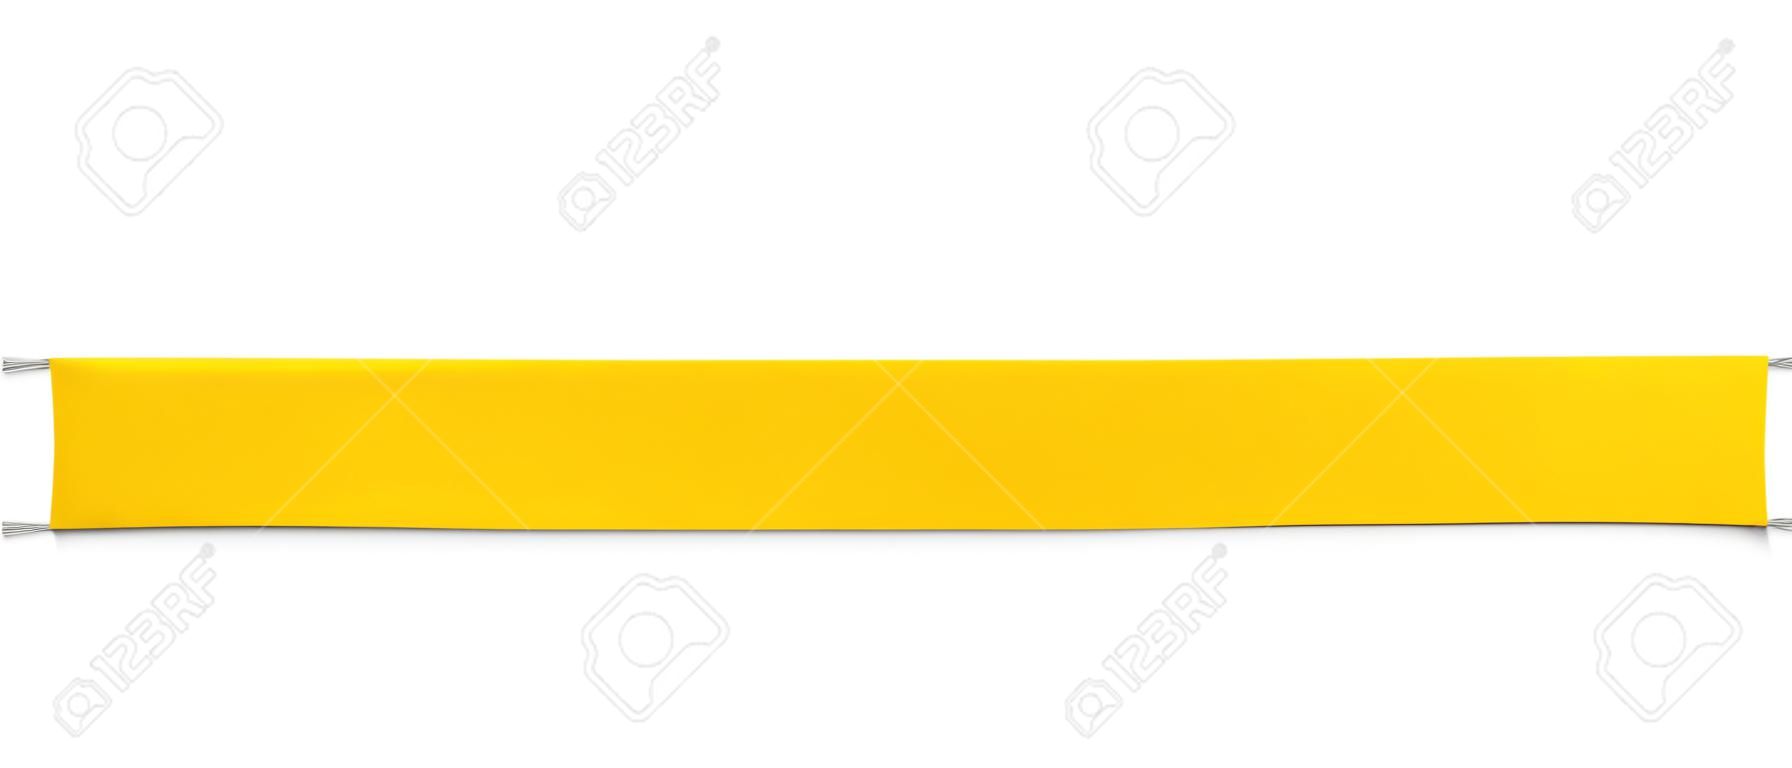 banner de papel amarelo isolado no branco